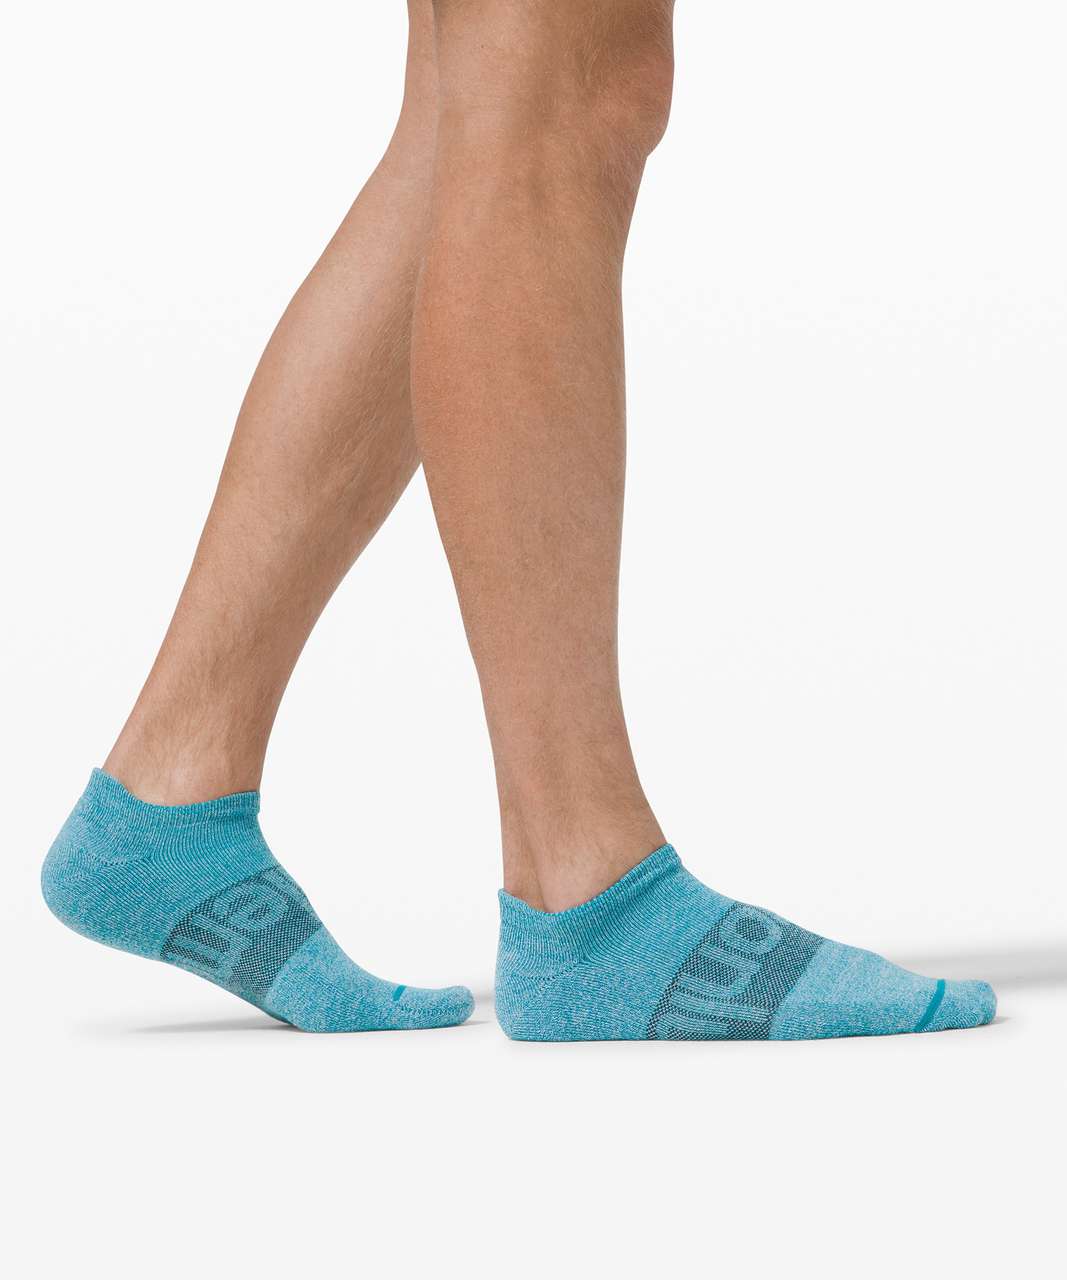 Men's Daily Stride Comfort Low-Ankle Socks *3 Pack, Men's Socks